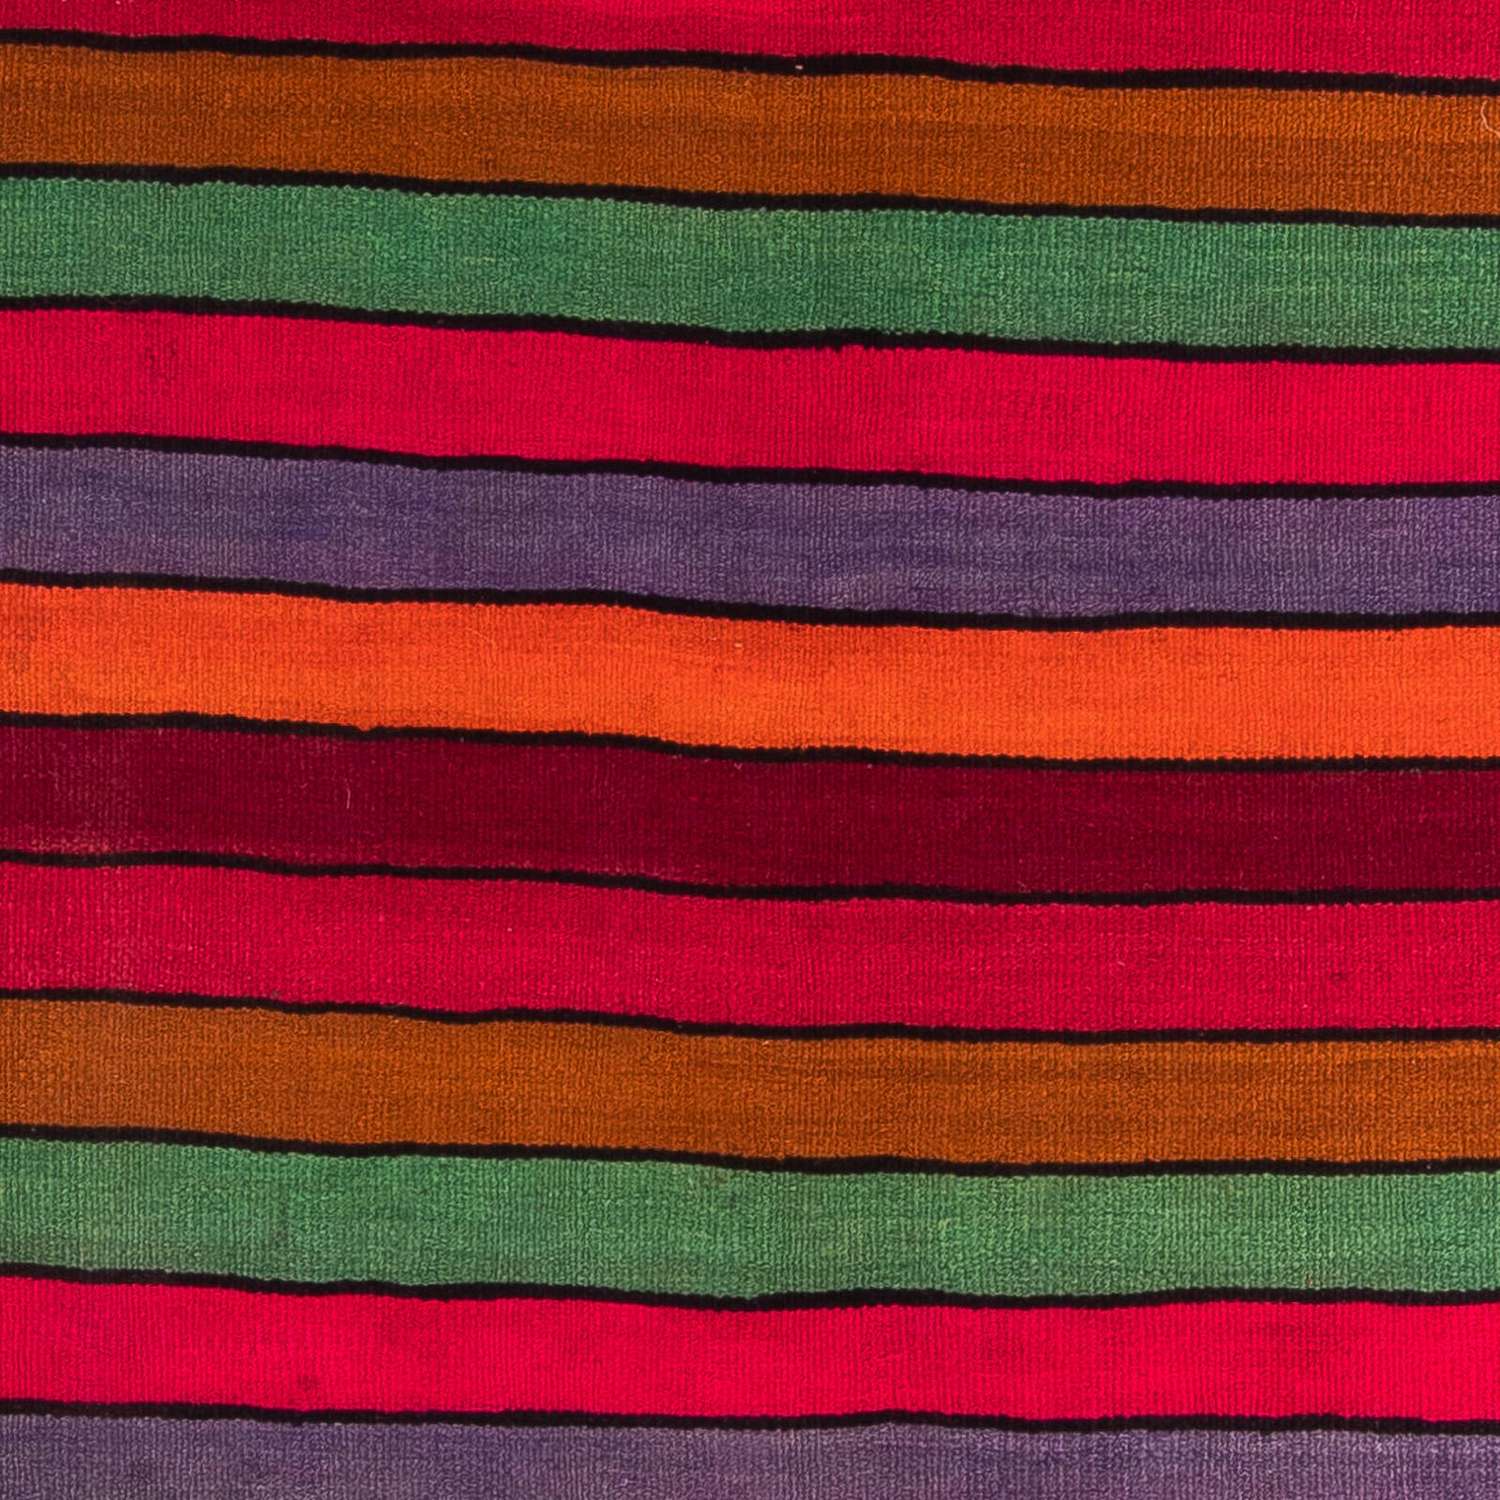 Tapis de couloir Tapis Kelim - Vieux - 350 x 185 cm - multicolore